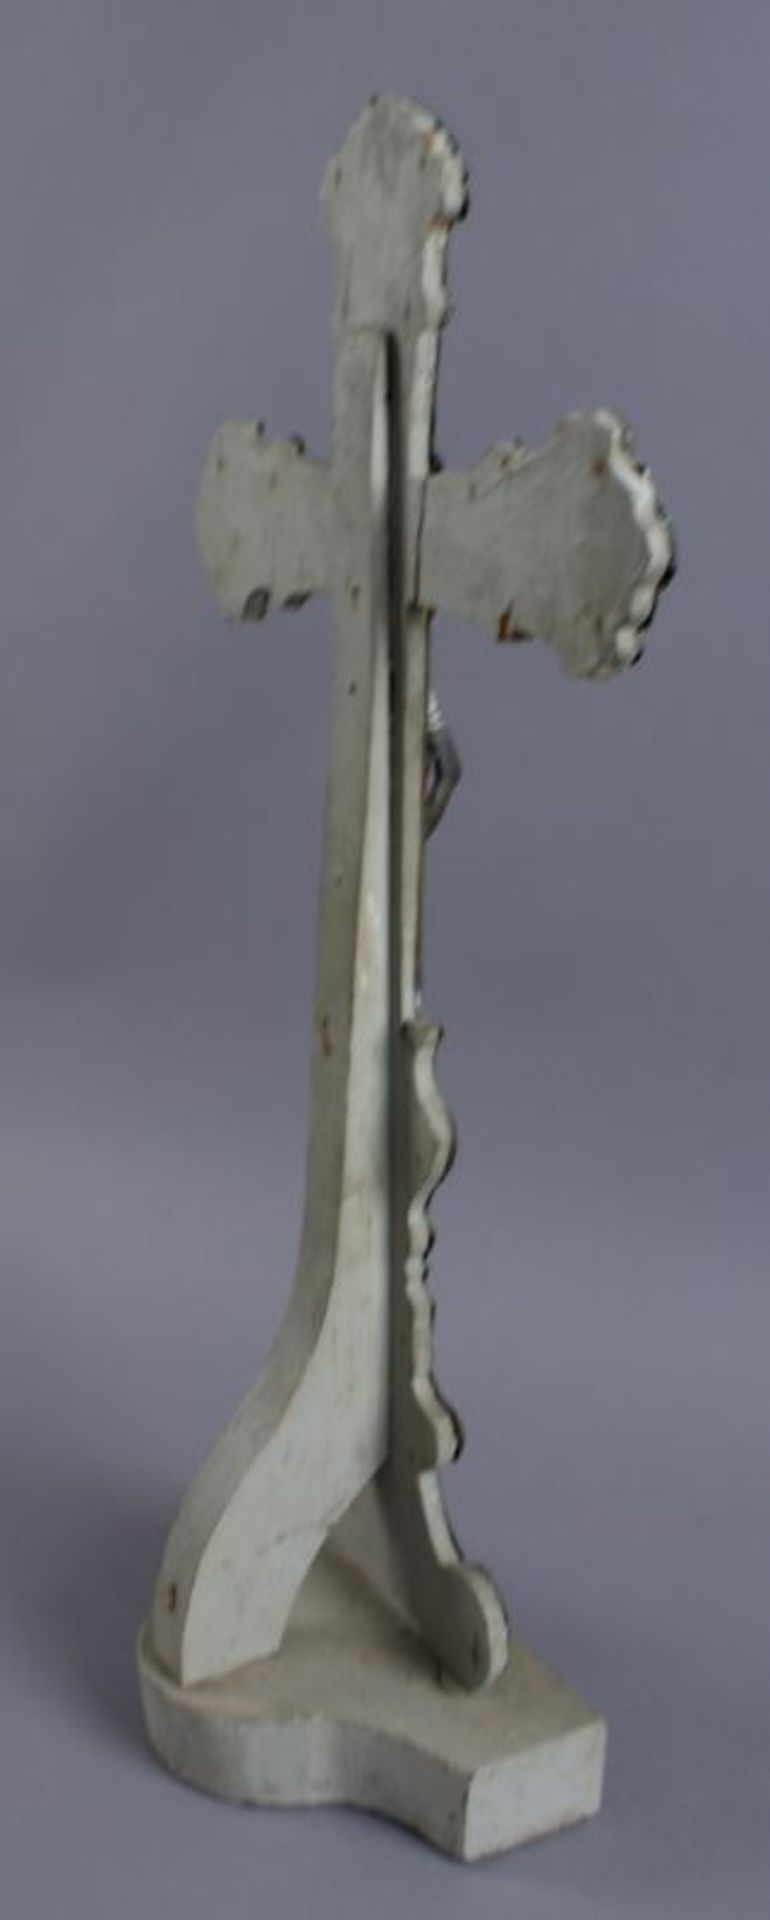 Grosses Standkreuz aus getriebenem Metall, auf Holzkorpus angebracht, H 49 cm 20.17 % buyer's - Bild 4 aus 5